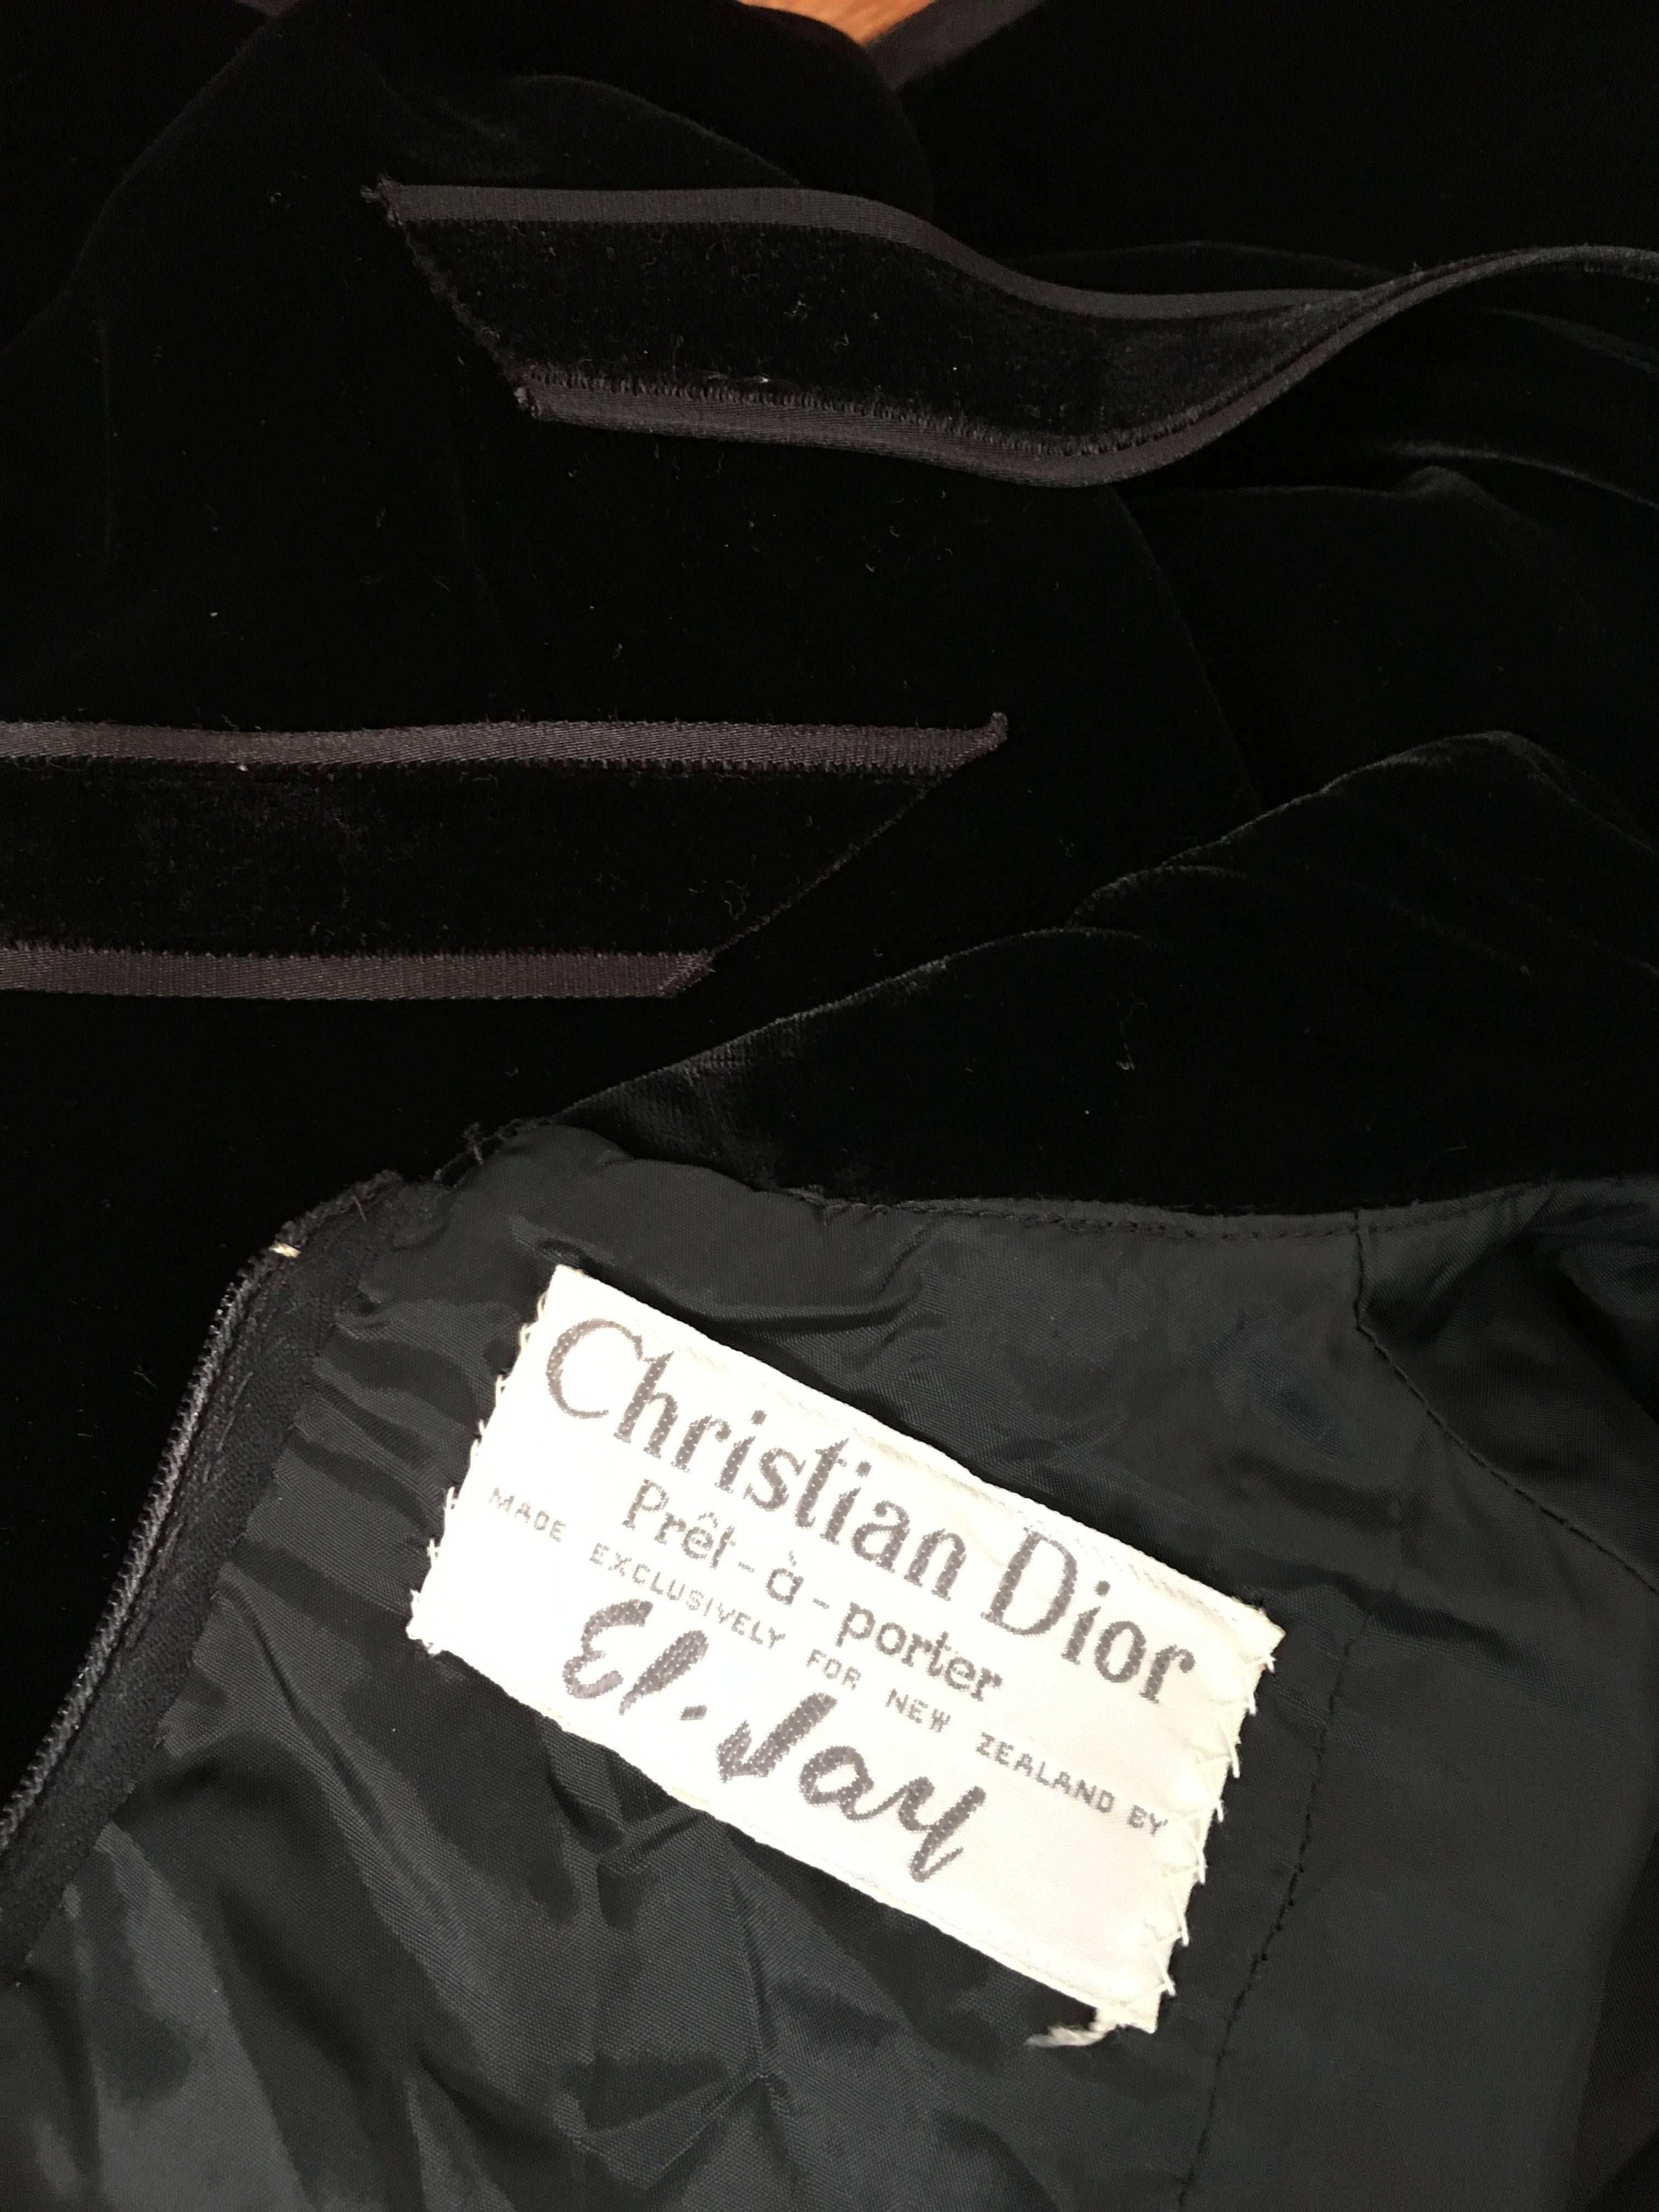 Dior for El Jay 1960s Black Velvet Evening Dress with Bow & Belt Size 6. 5